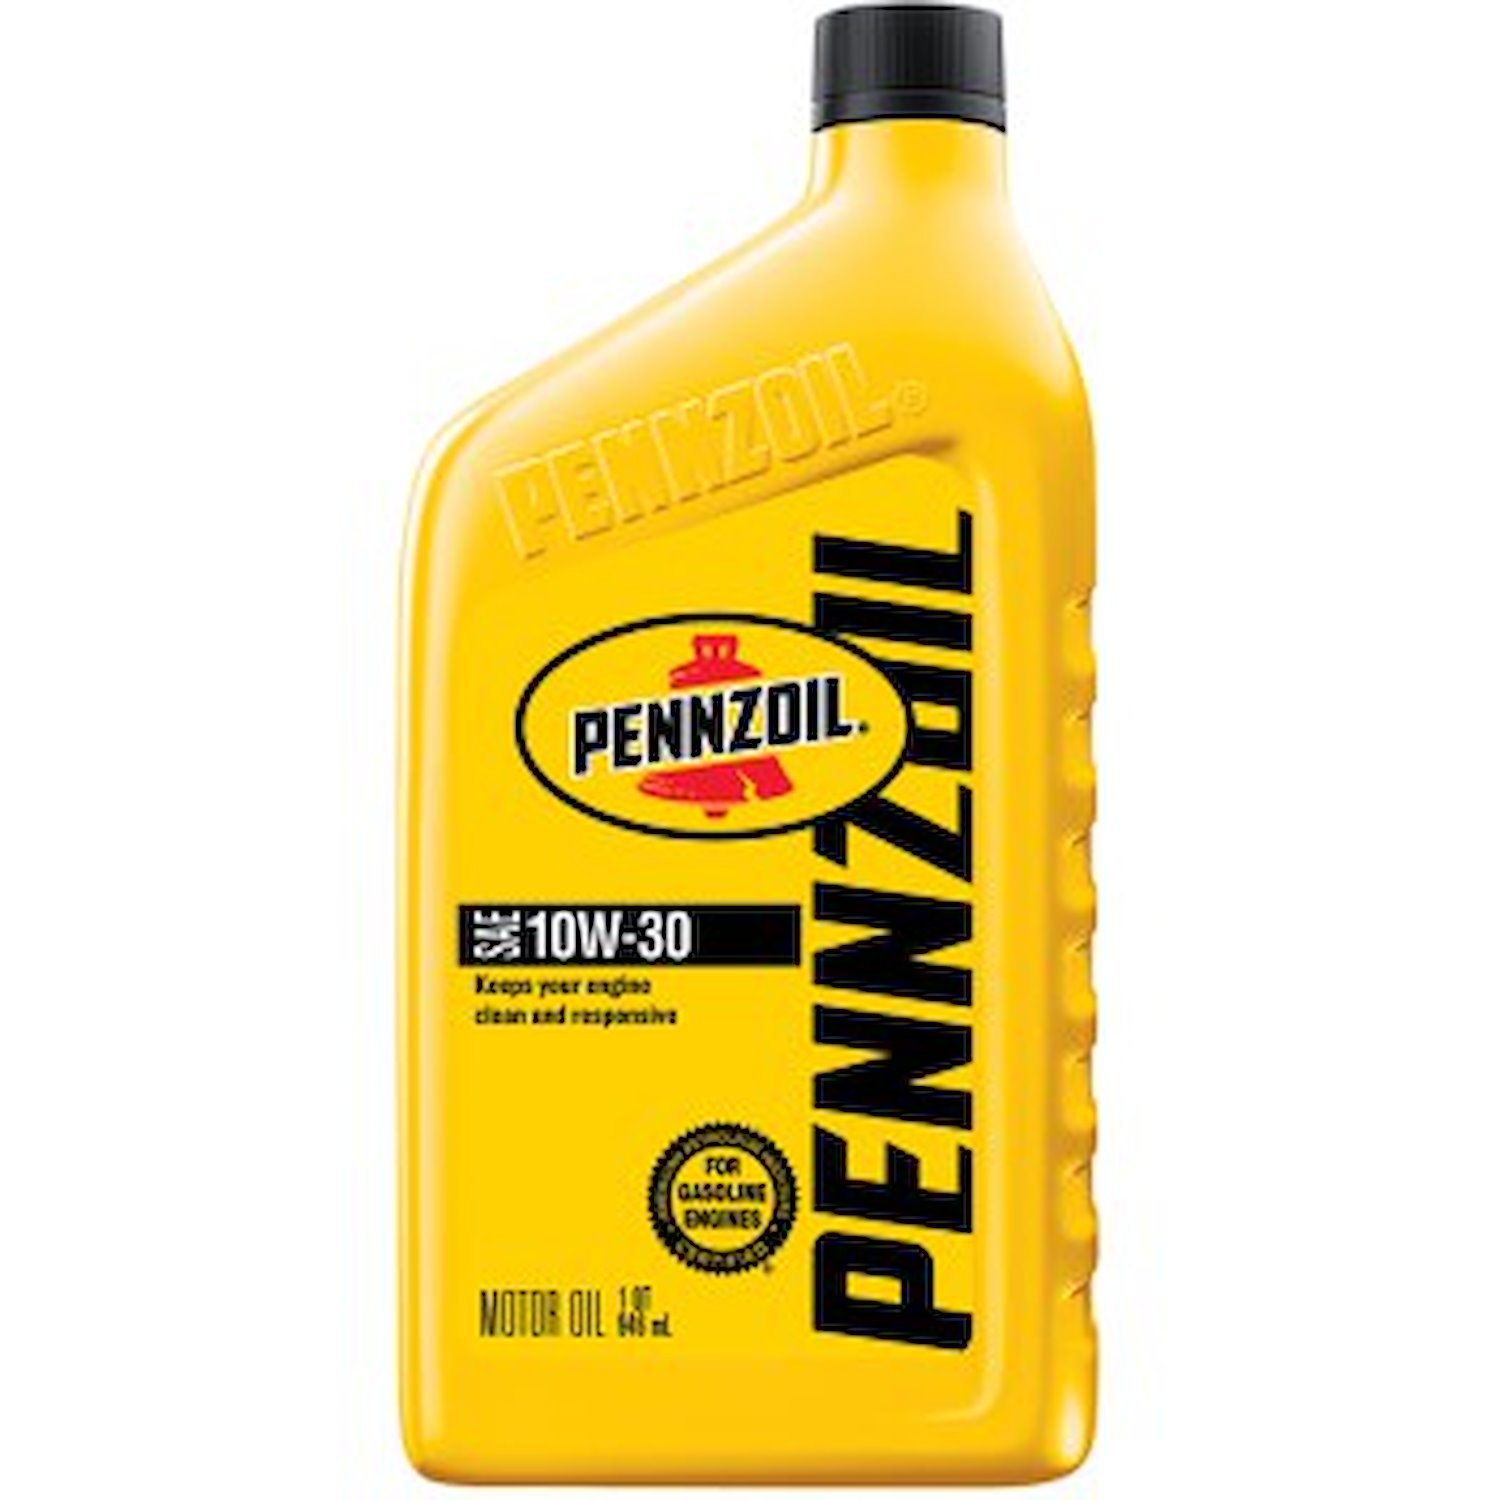 Pennzoil Motor Oil 10W-30